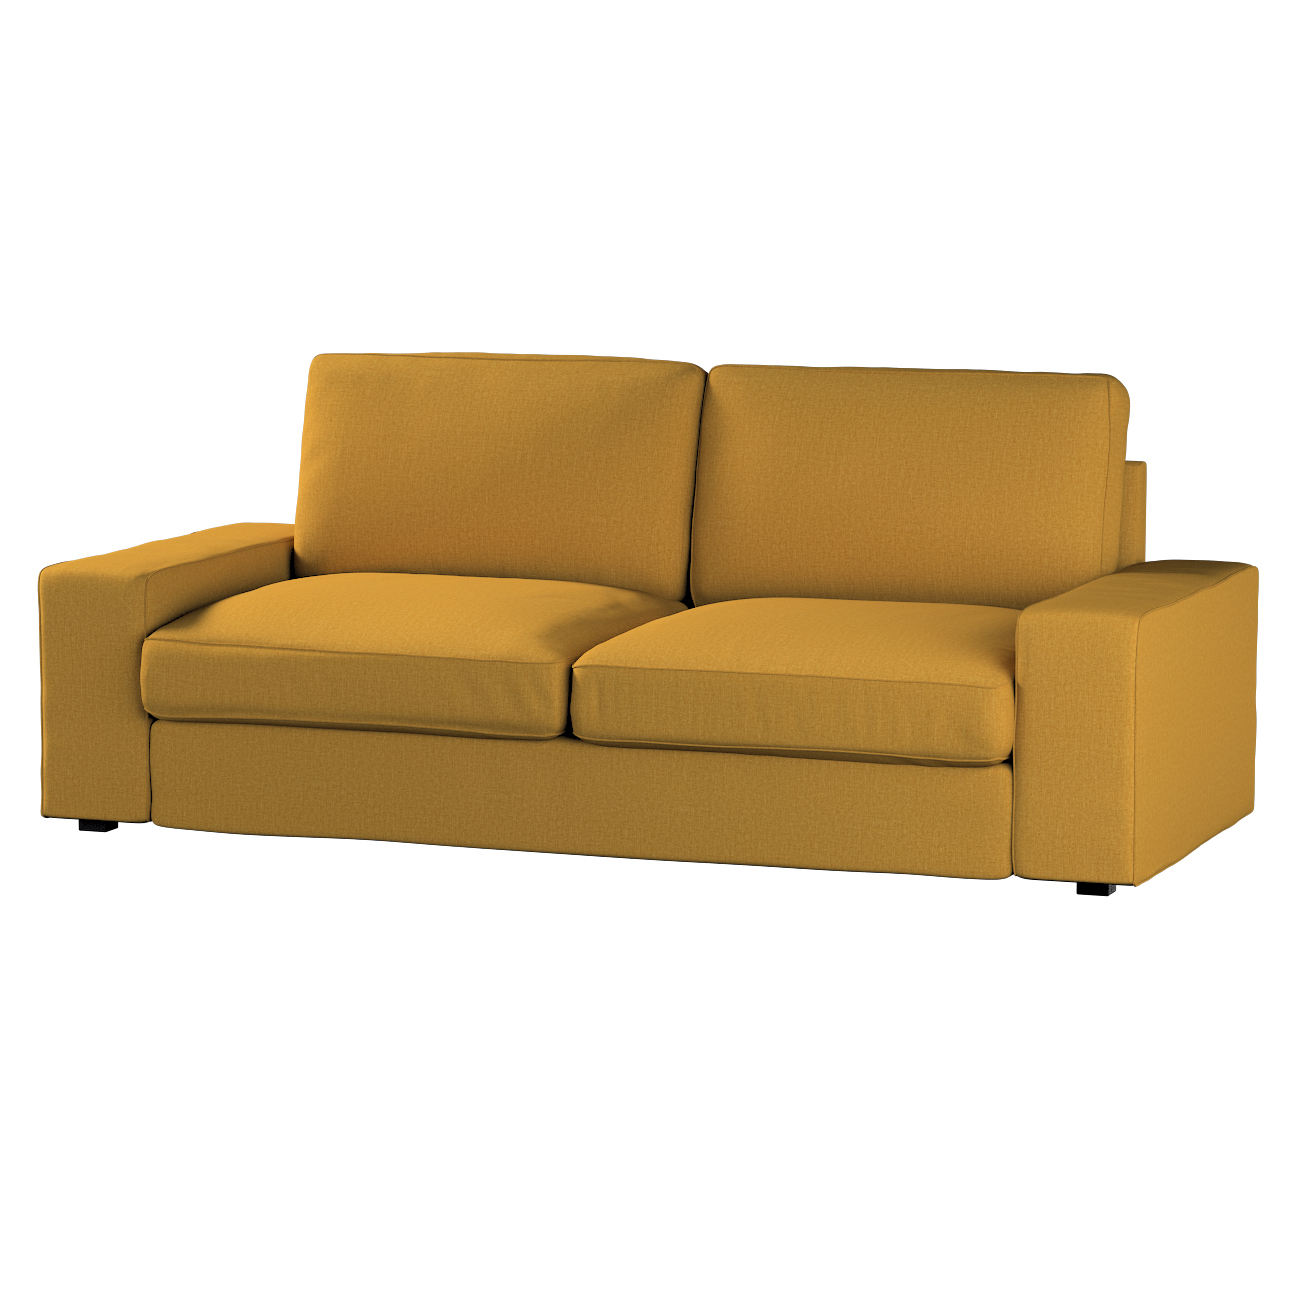 Bezug für Kivik 3-Sitzer Sofa, senfgelb, Bezug für Sofa Kivik 3-Sitzer, Cit günstig online kaufen